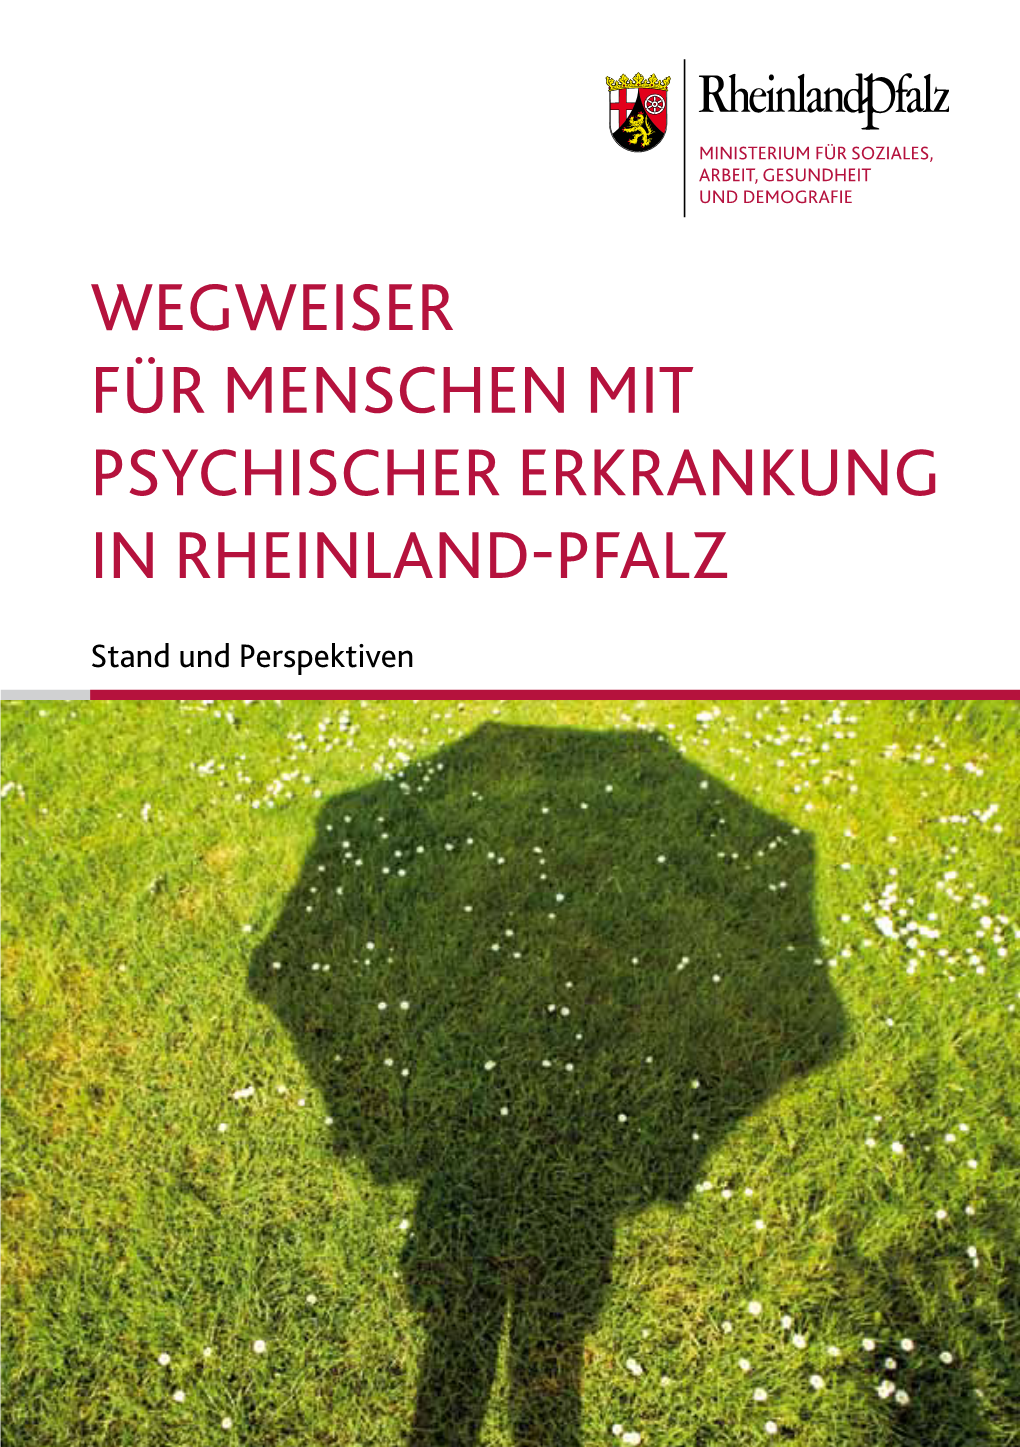 WEGWEISER Für Menschen Mit Psychischer Erkrankung in Rheinland-Pfalz